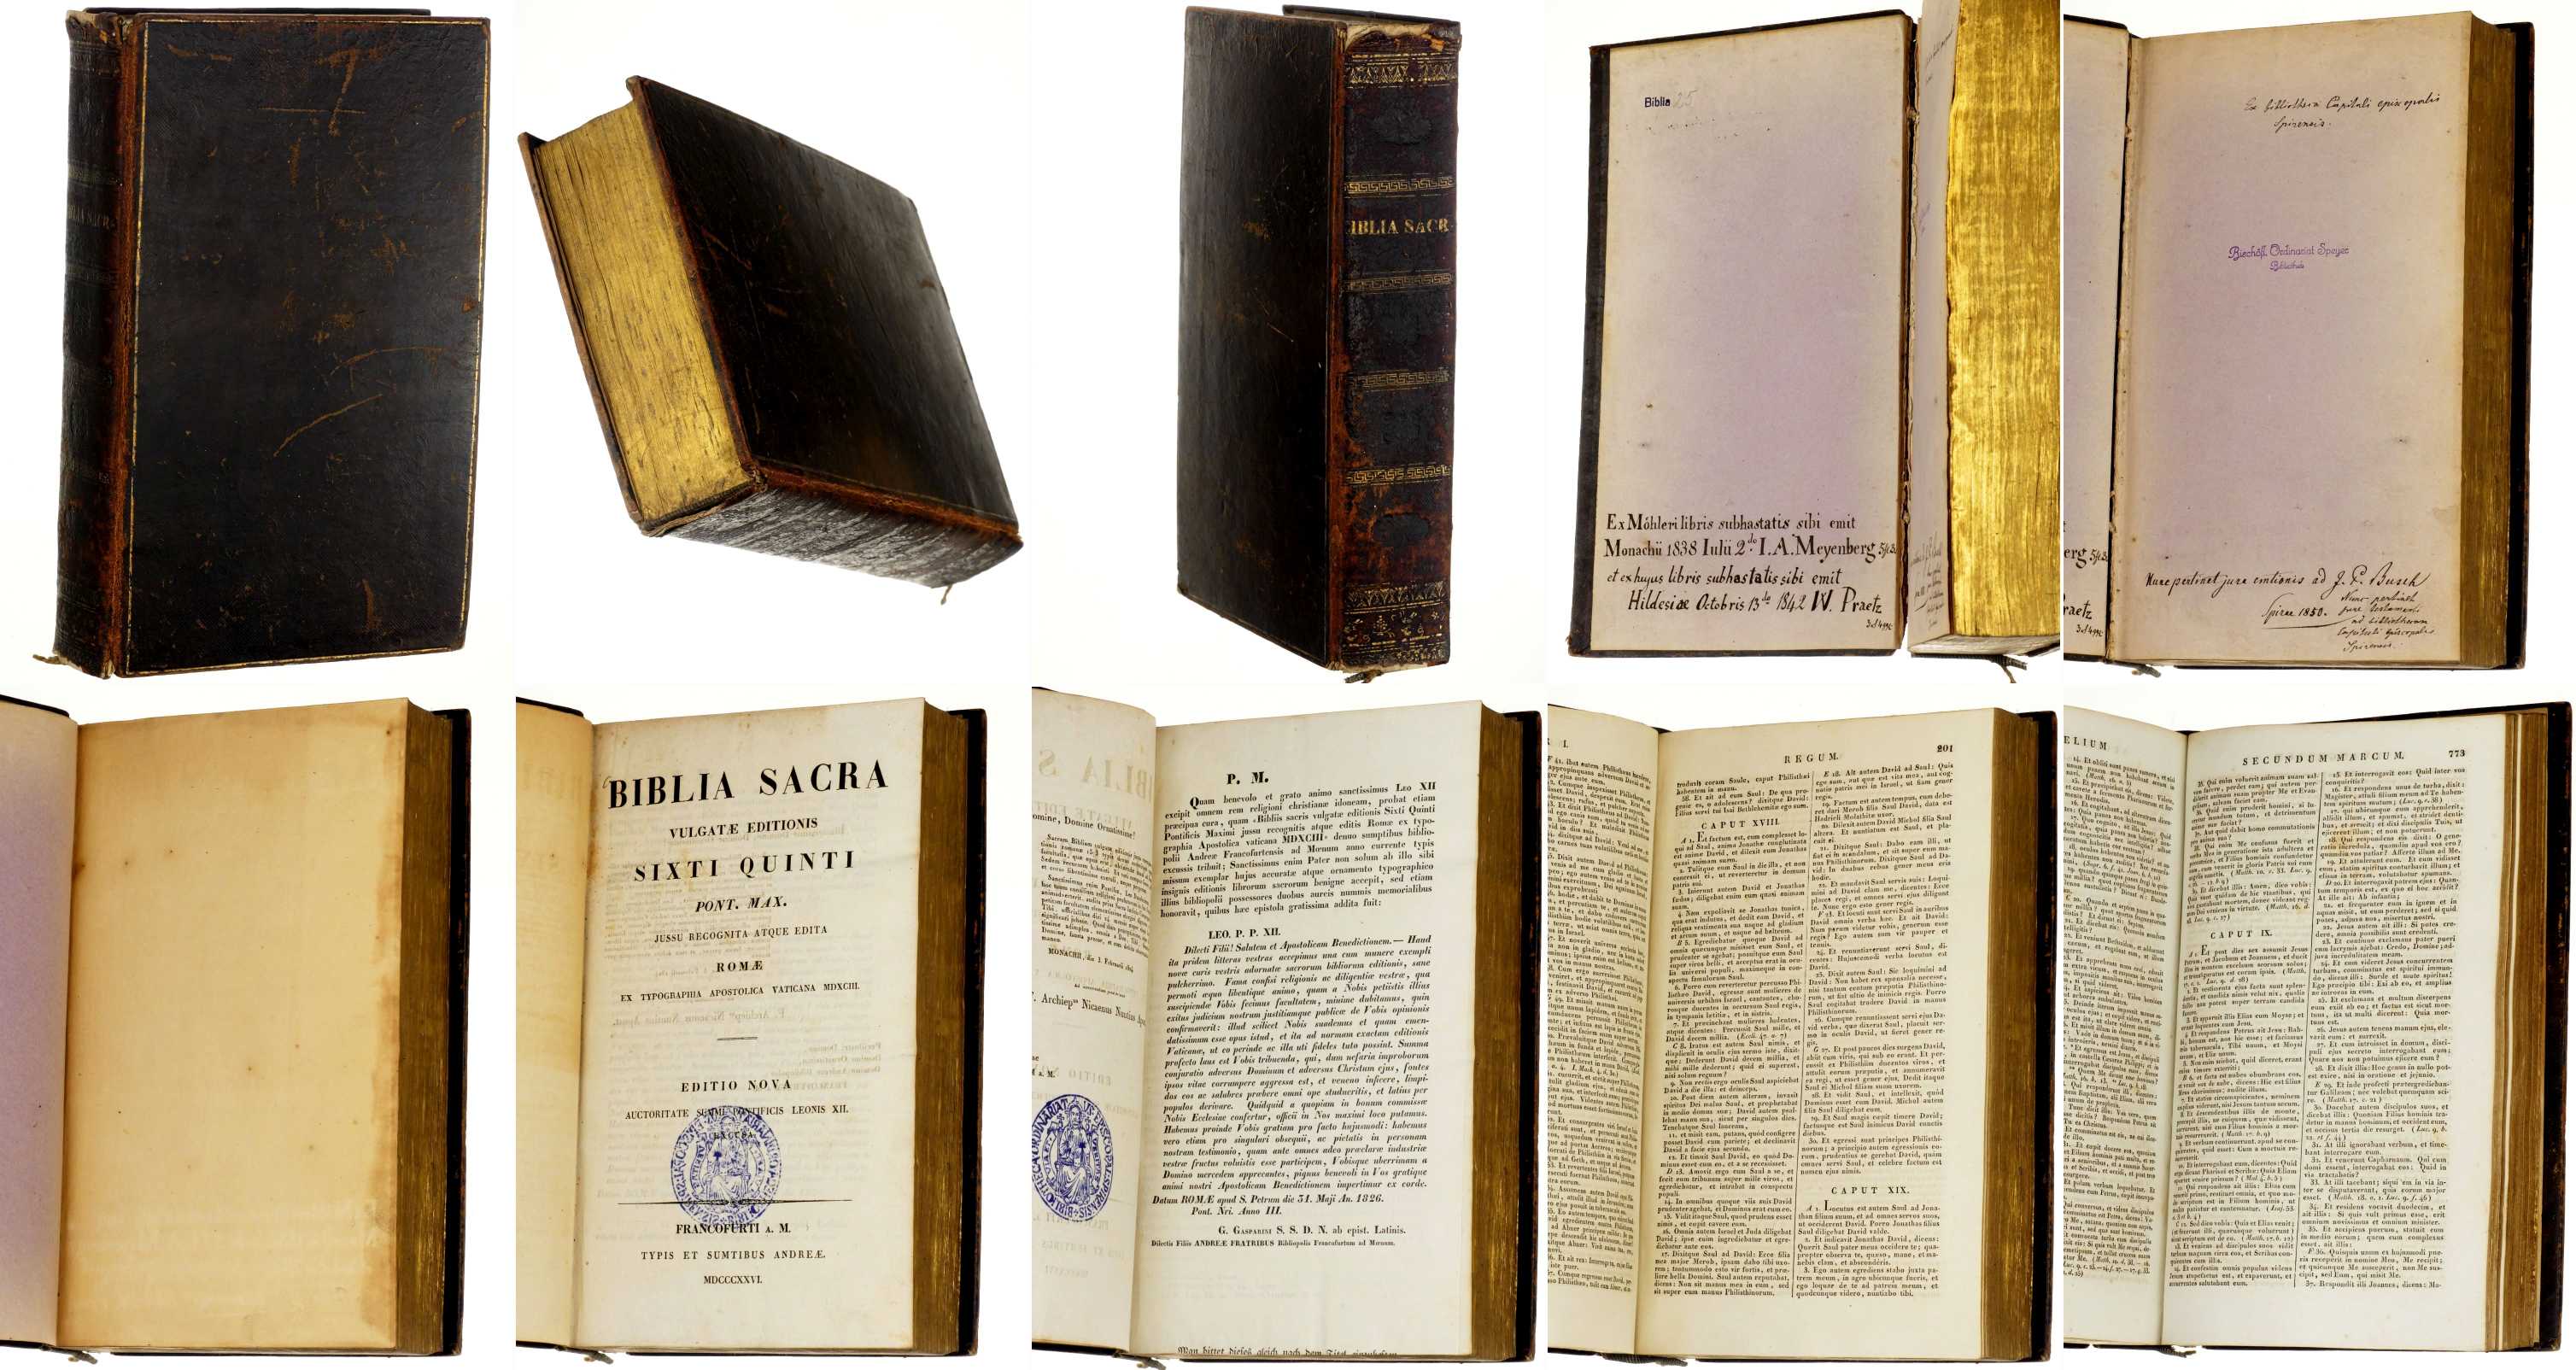   Biblia Sacra Vulgatae editionis. Sixti Quinti Pont. Max. jussu recognita atque edita Romae ex typographia Apostolica Vaticana MDXCIII. 